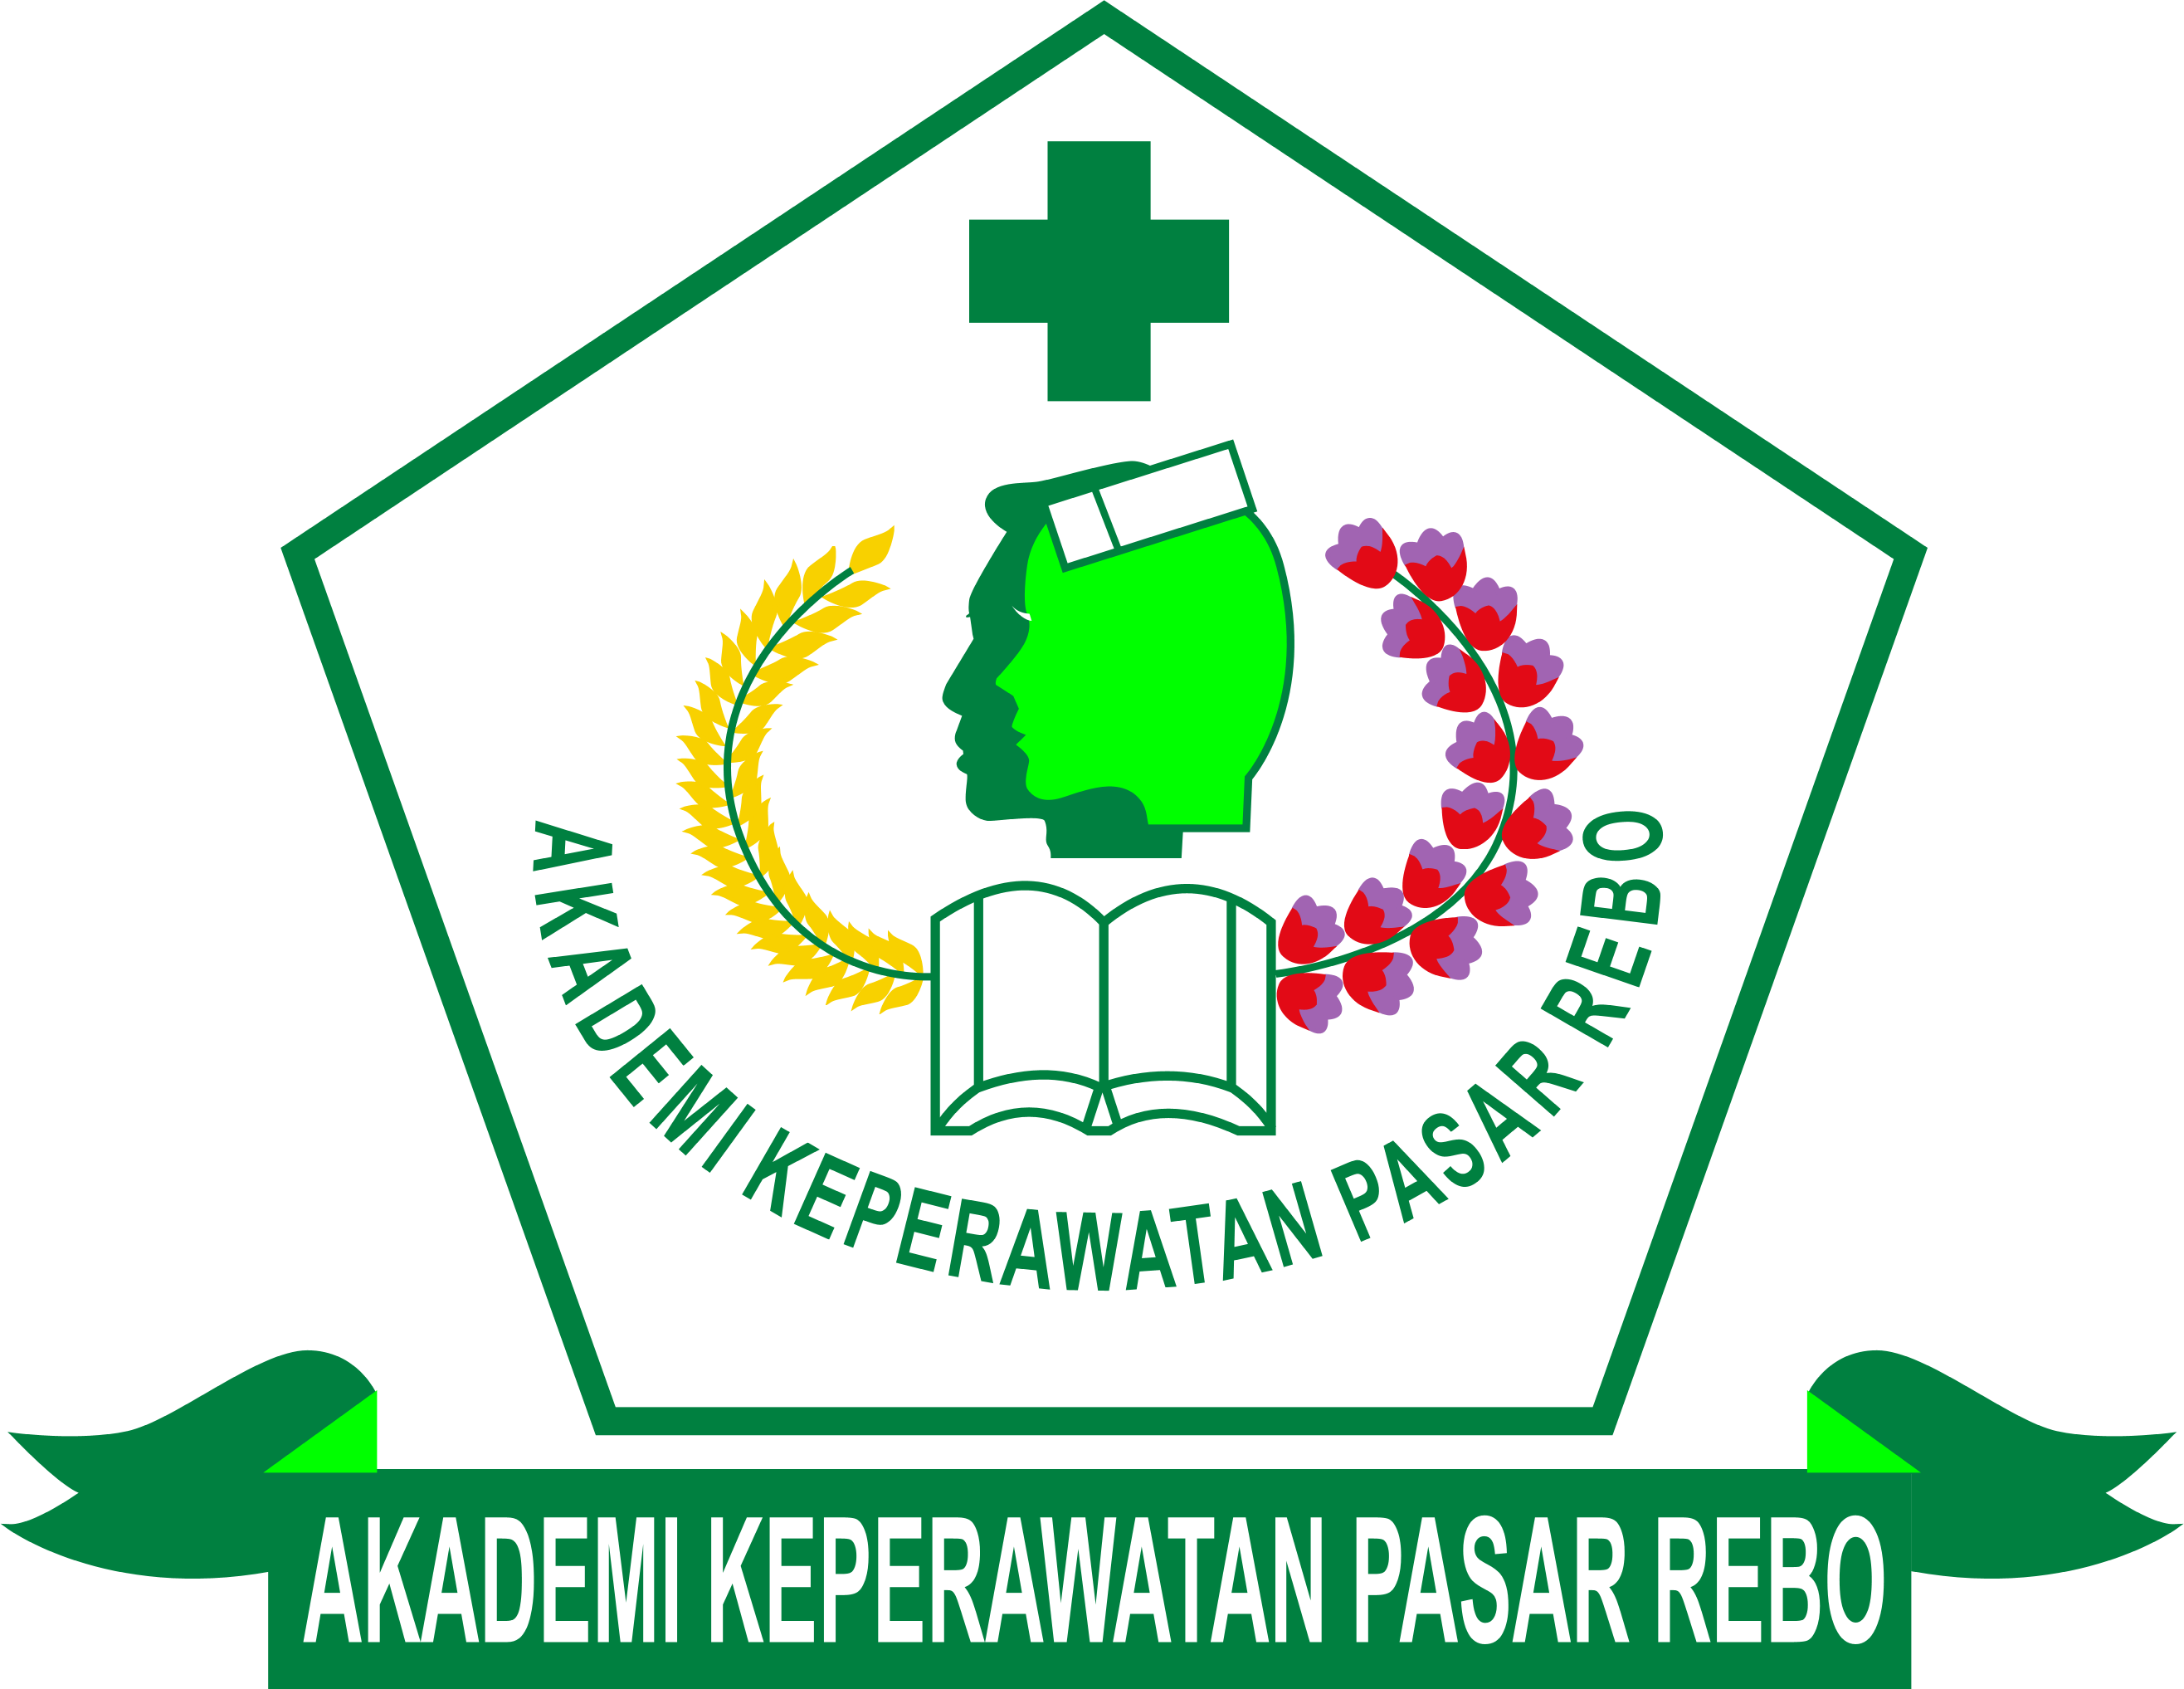 Akademi Keperawatan Pasar Rebo Jakarta